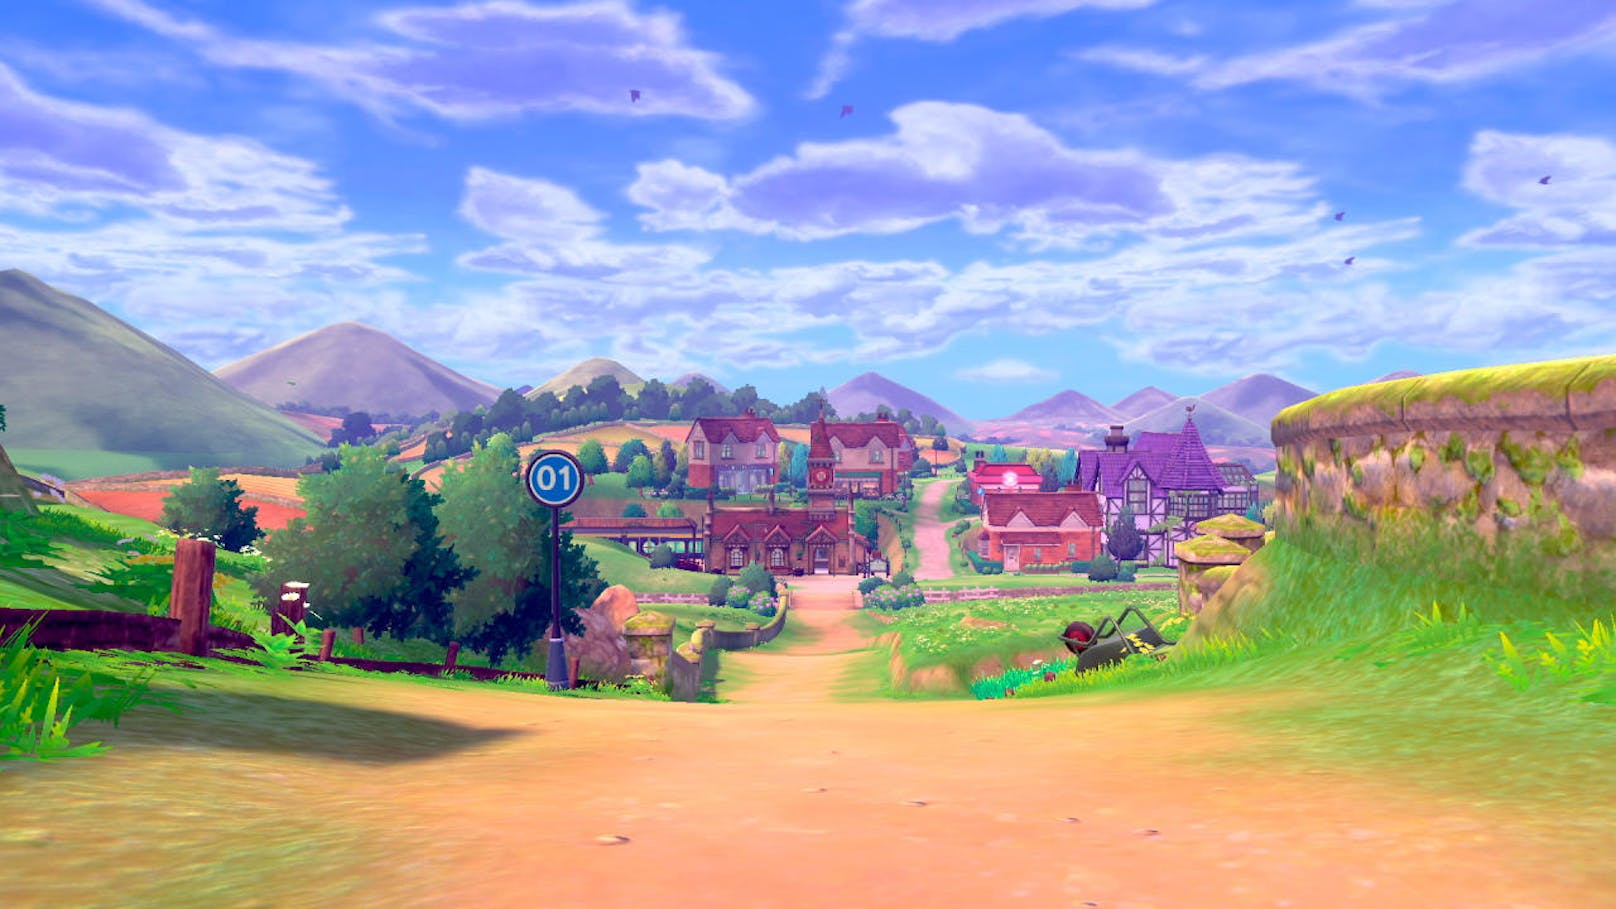 Die Möglichkeiten der Darstellung eines Pokémon-Rollenspiels auf dem großen Fernseher dürfte den Ehrgeiz der Entwickler geweckt haben. Bereits wenn man das erste Mal aus der Tür des elterlichen Hauses tritt und einen kleinen Pfad entlang geht, erstreckt sich ein malerisches Panorama, das eine kleine Stadt sowie Bäume bis weit in die Ferne zeigt. So aufwändig sah noch nie ein Pokémon-Game aus. Und das ist nur der Anfang - Städte und Pokemon-Arenen warten mit wunderbaren Details und Themen auf.